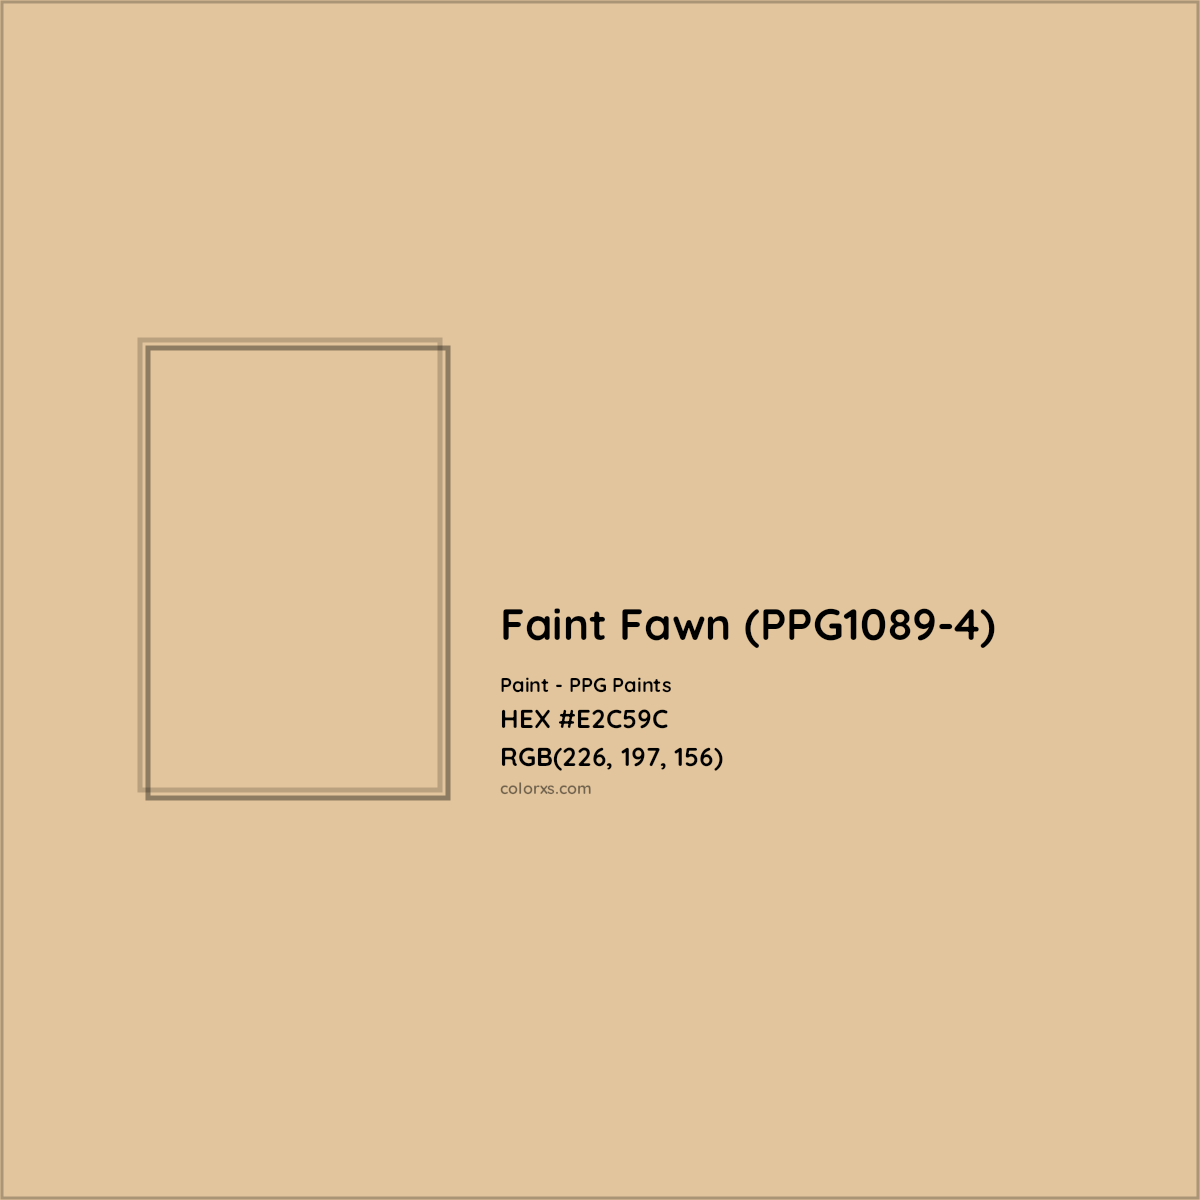 HEX #E2C59C Faint Fawn (PPG1089-4) Paint PPG Paints - Color Code